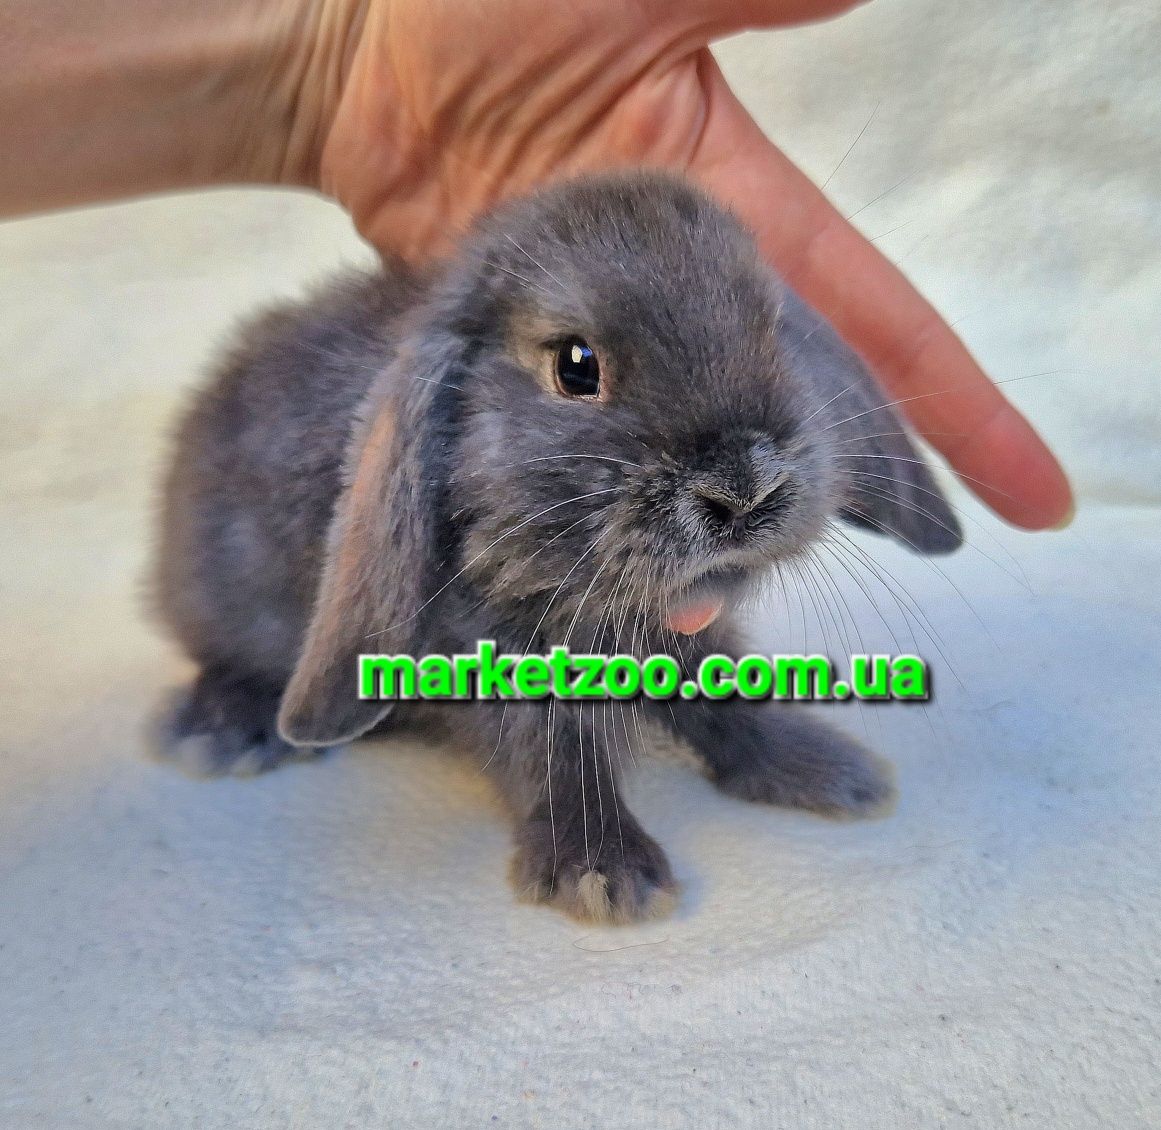 Мини кролик вислоухий баранчик mini lop голубой карликовые кролики